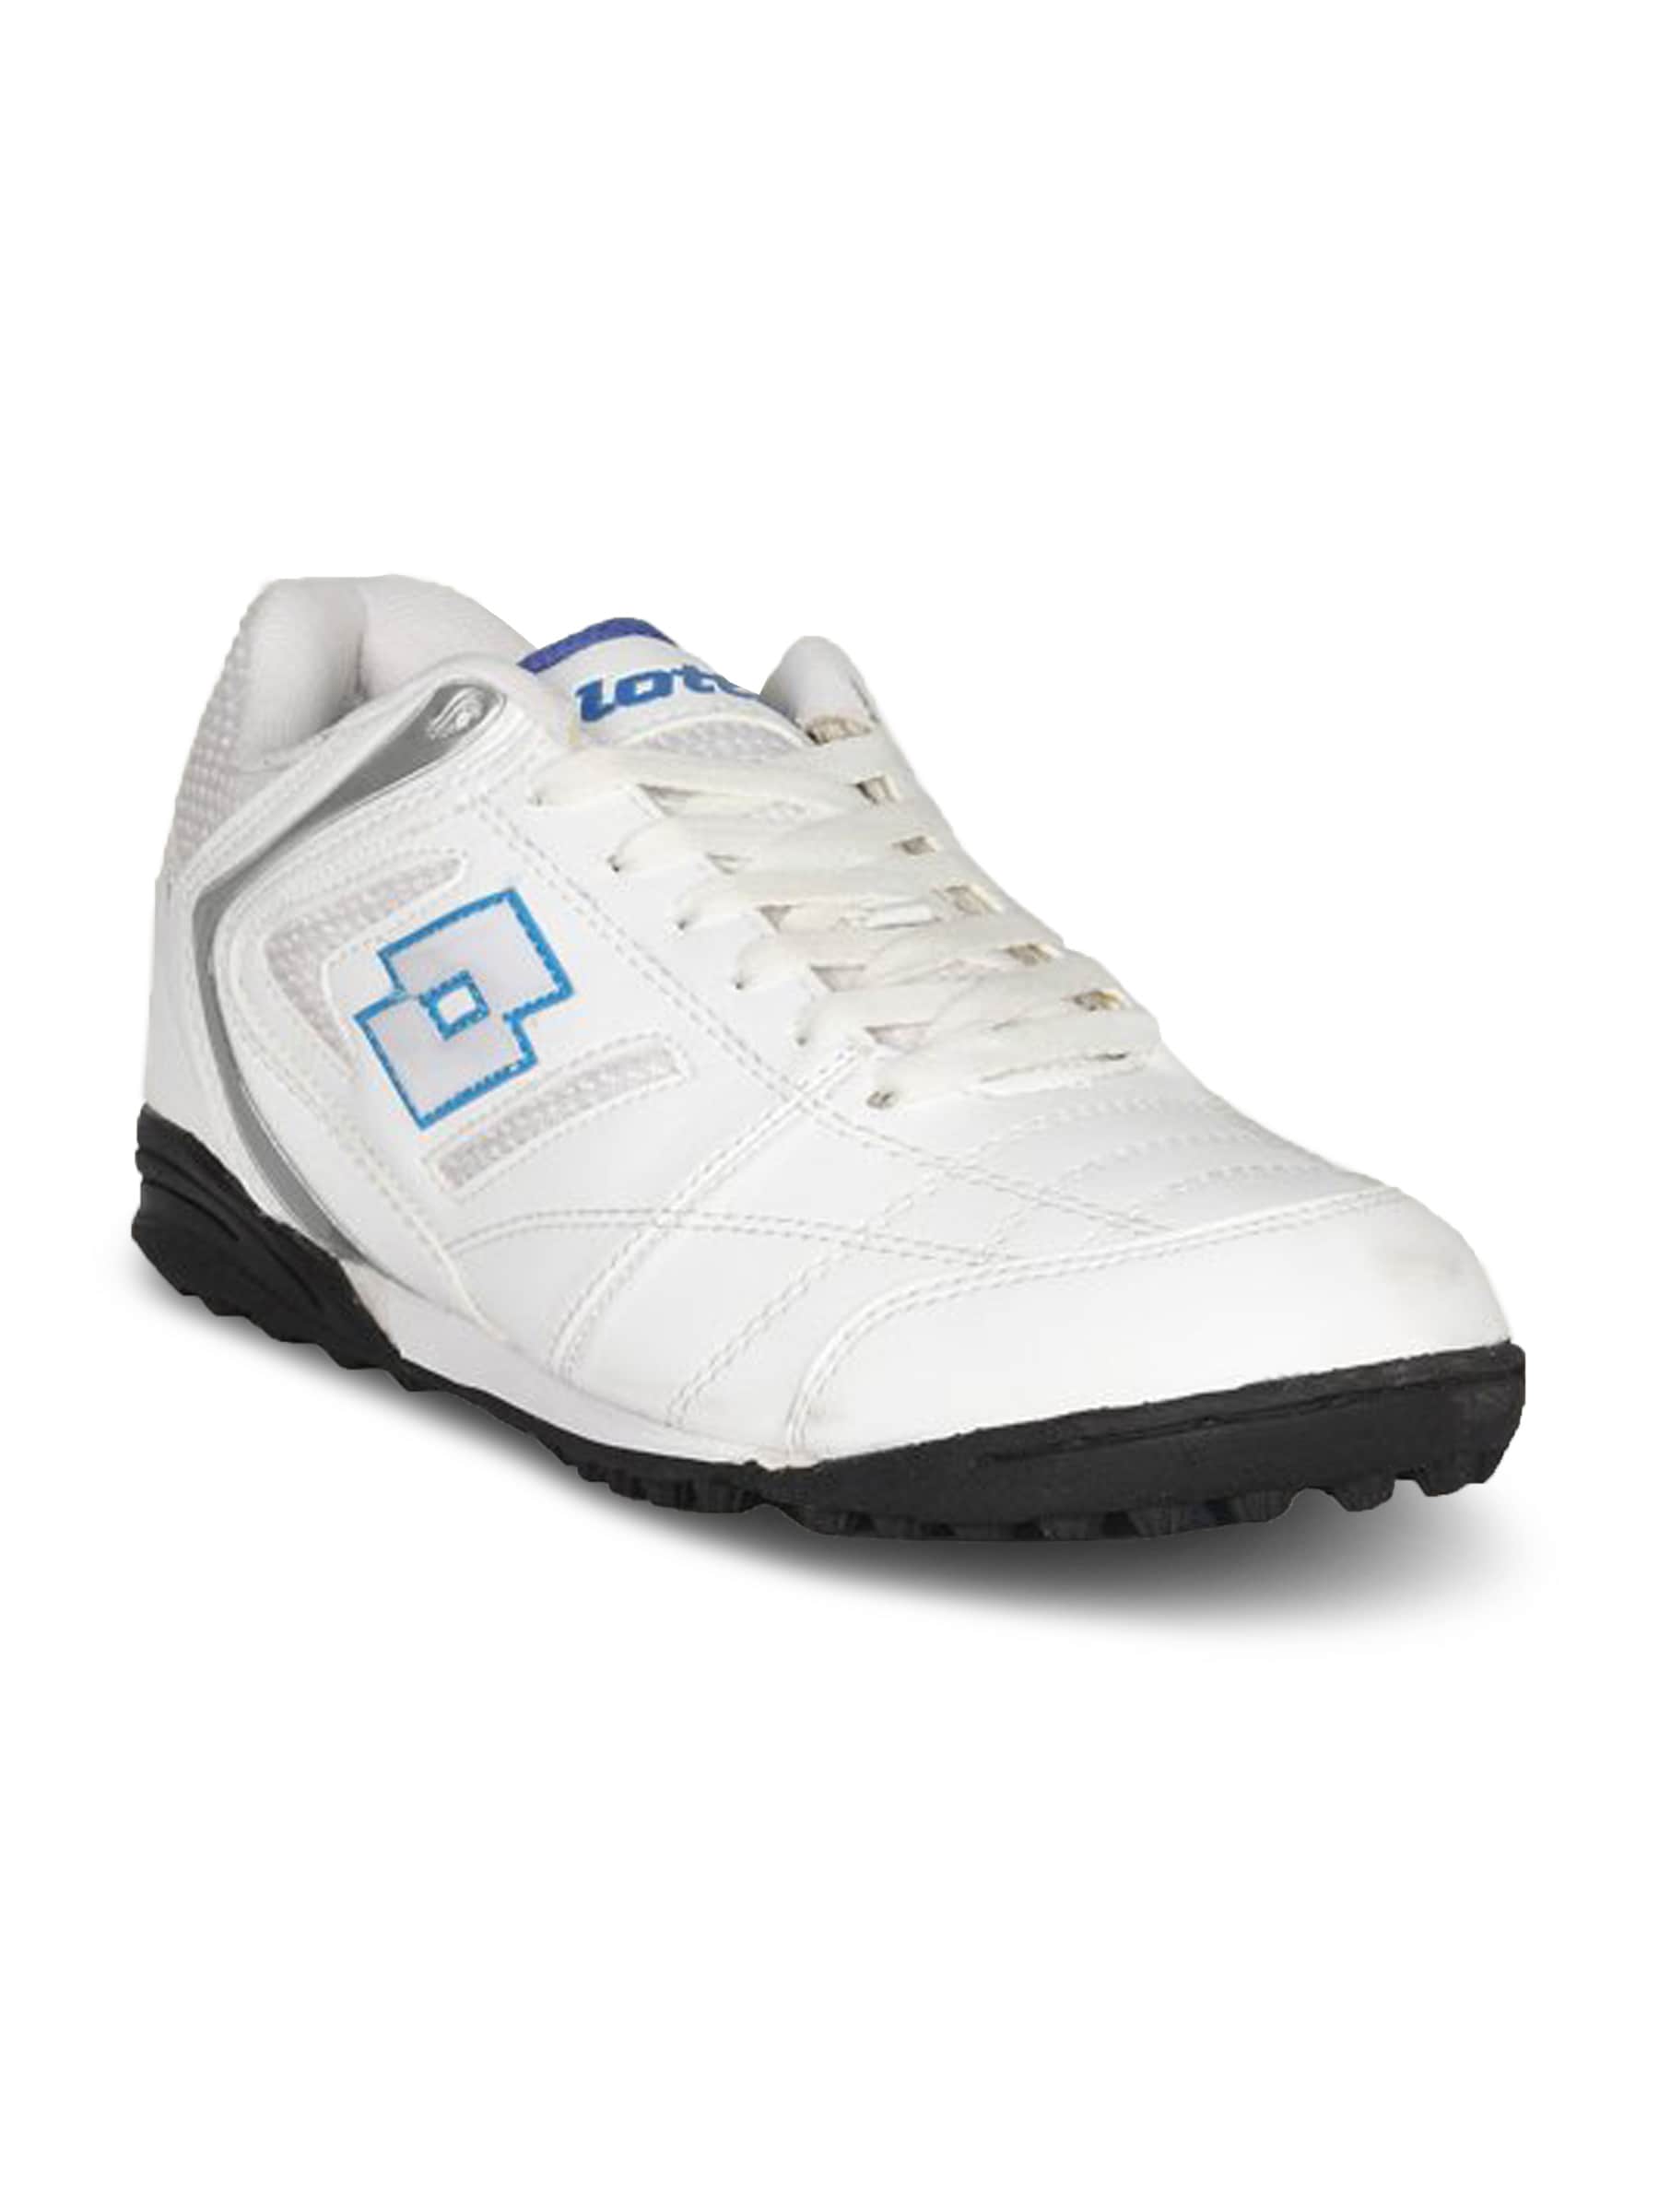 Lotto Men's Calcetto White Shoe